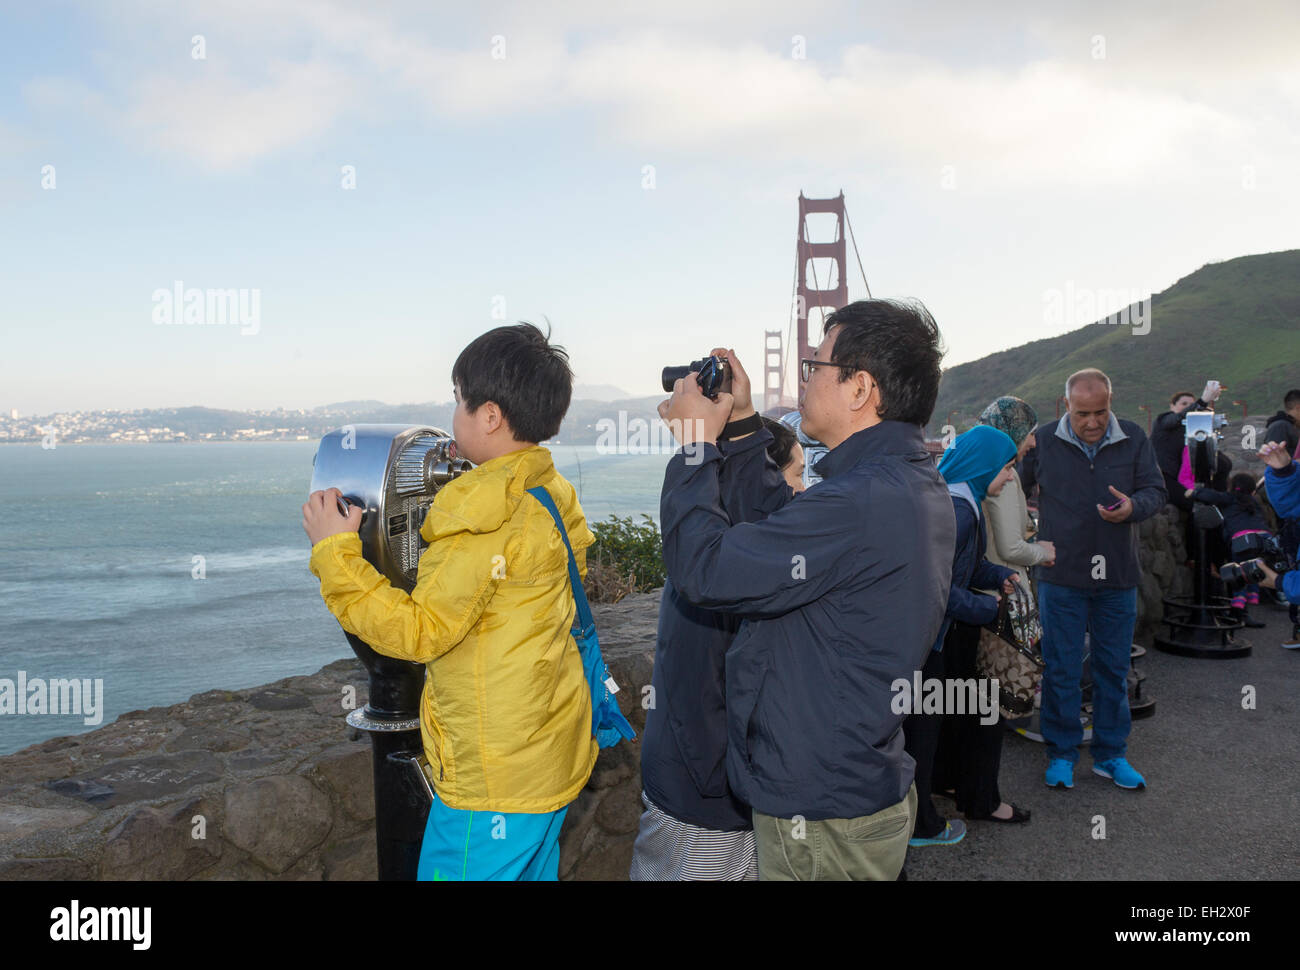 Les touristes, père et fils, viseur, Vista Point, au nord-est de die tour nord du Golden Gate Bridge, de la ville de Sausalito, comté de Marin, en Californie Banque D'Images